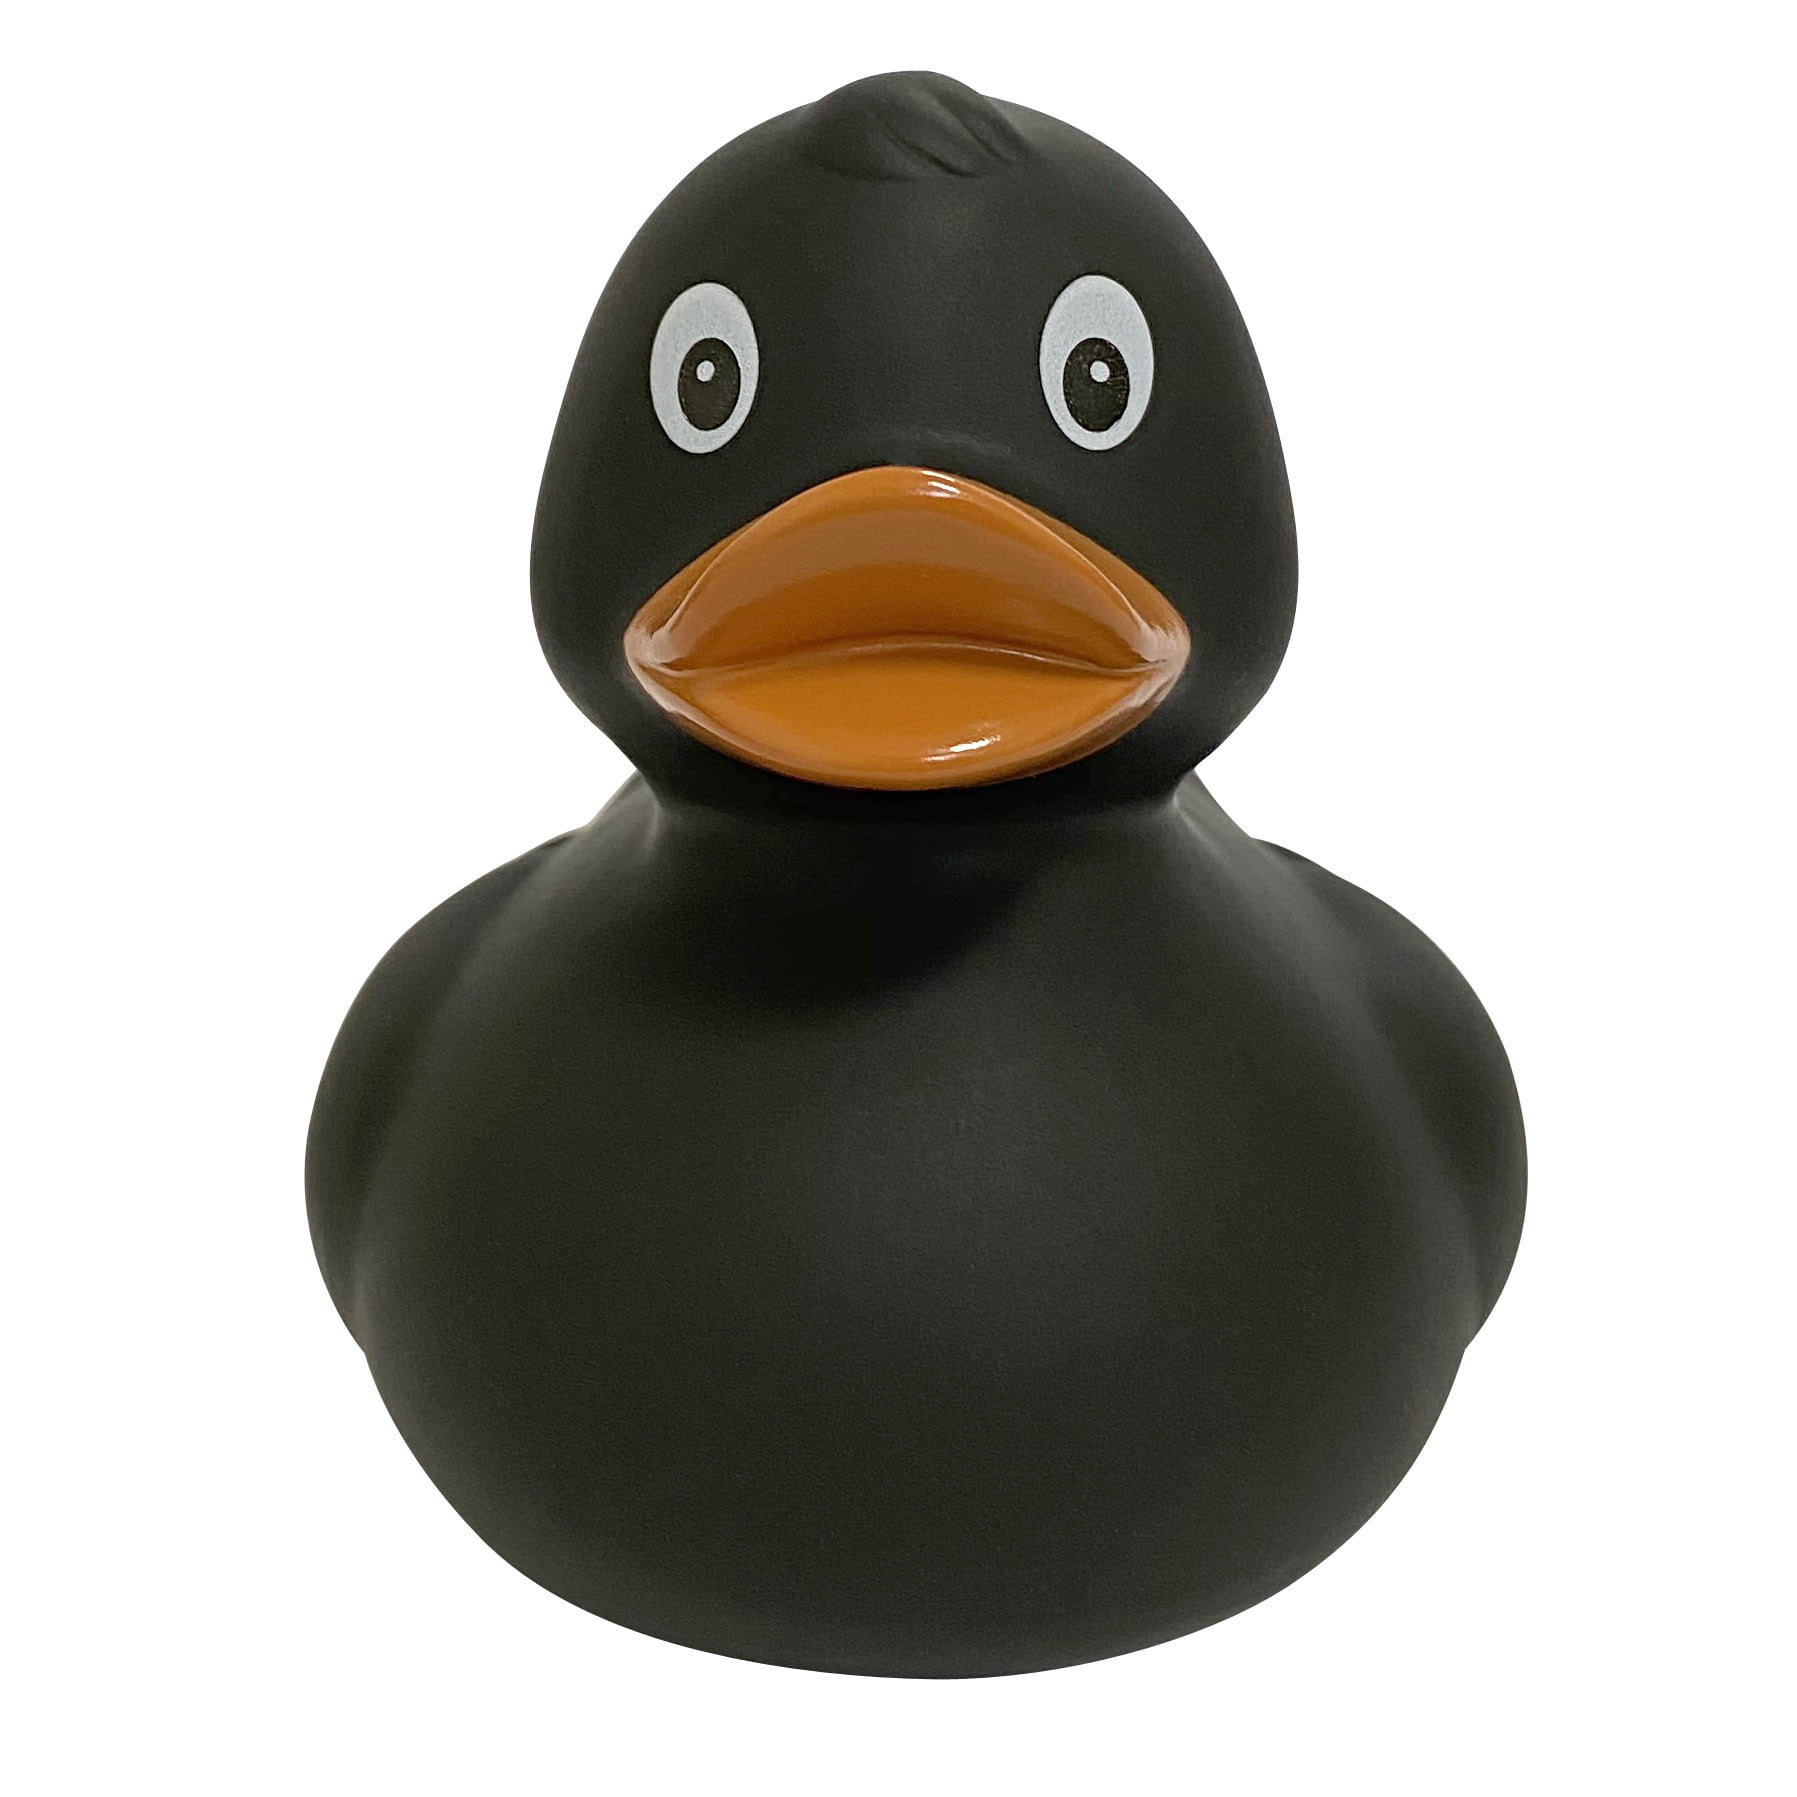 Игрушка для ванной FUNNY DUCKS Черная уточка игрушка для ванны funny ducks сувенир ниндзя уточка 1819